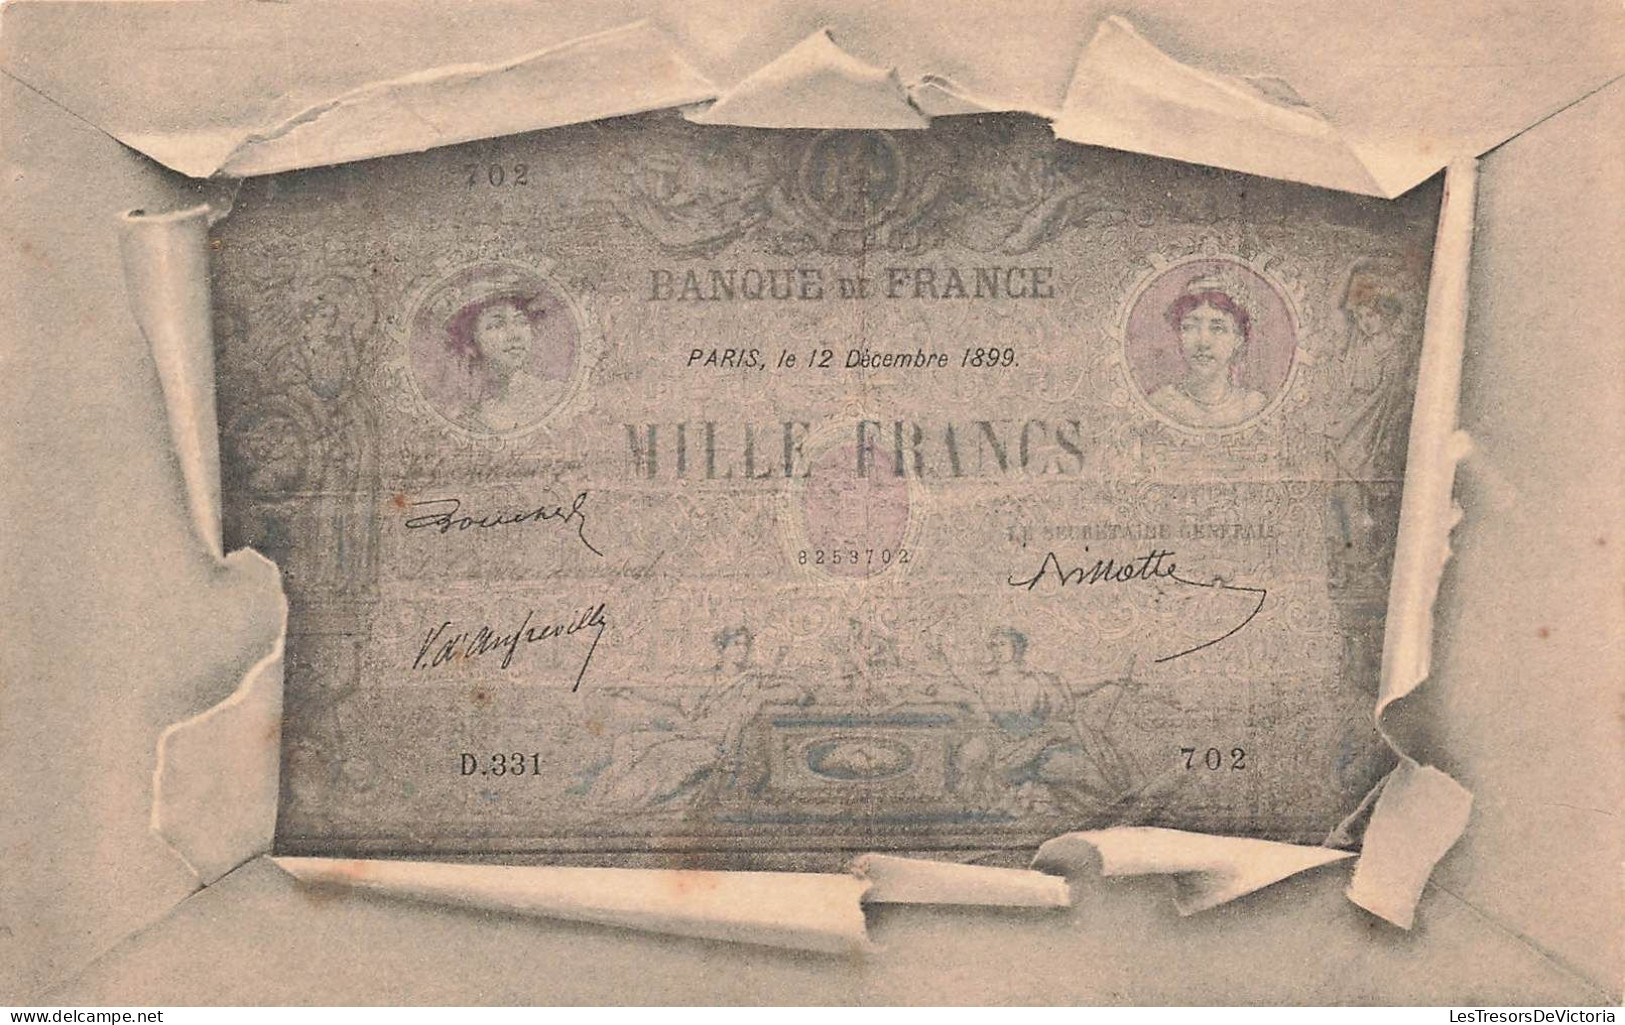 MONNAIES (représentations) - Mille Francs - Banque De France - Paris Le 12 Décembre 1899 - Carte Postale Ancienne - Munten (afbeeldingen)